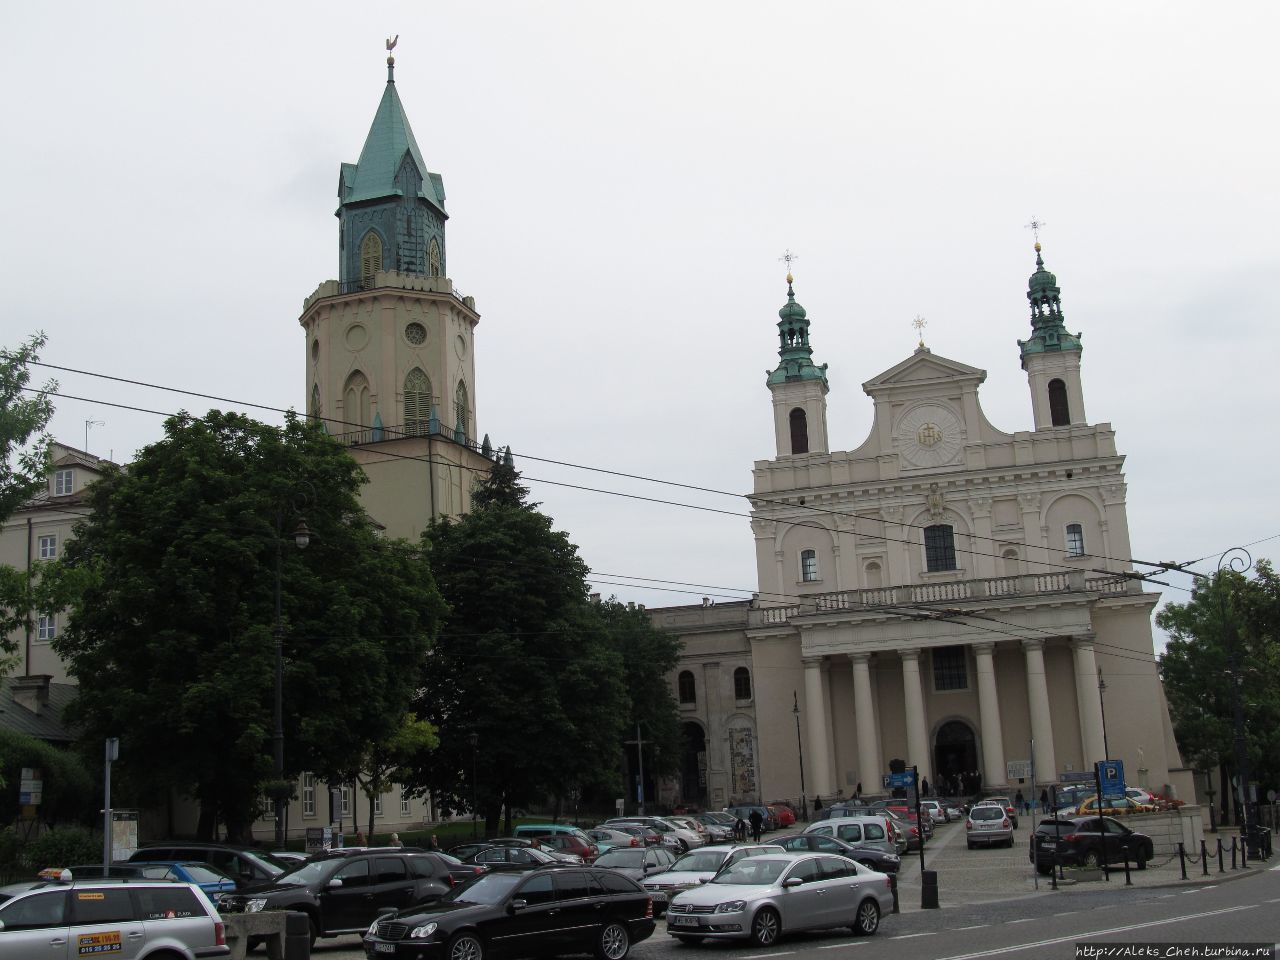 Архикатедра św. Jana Chrzciciela i św. Jana Ewangelisty.
Слева Тринитарска вежа Люблин, Польша